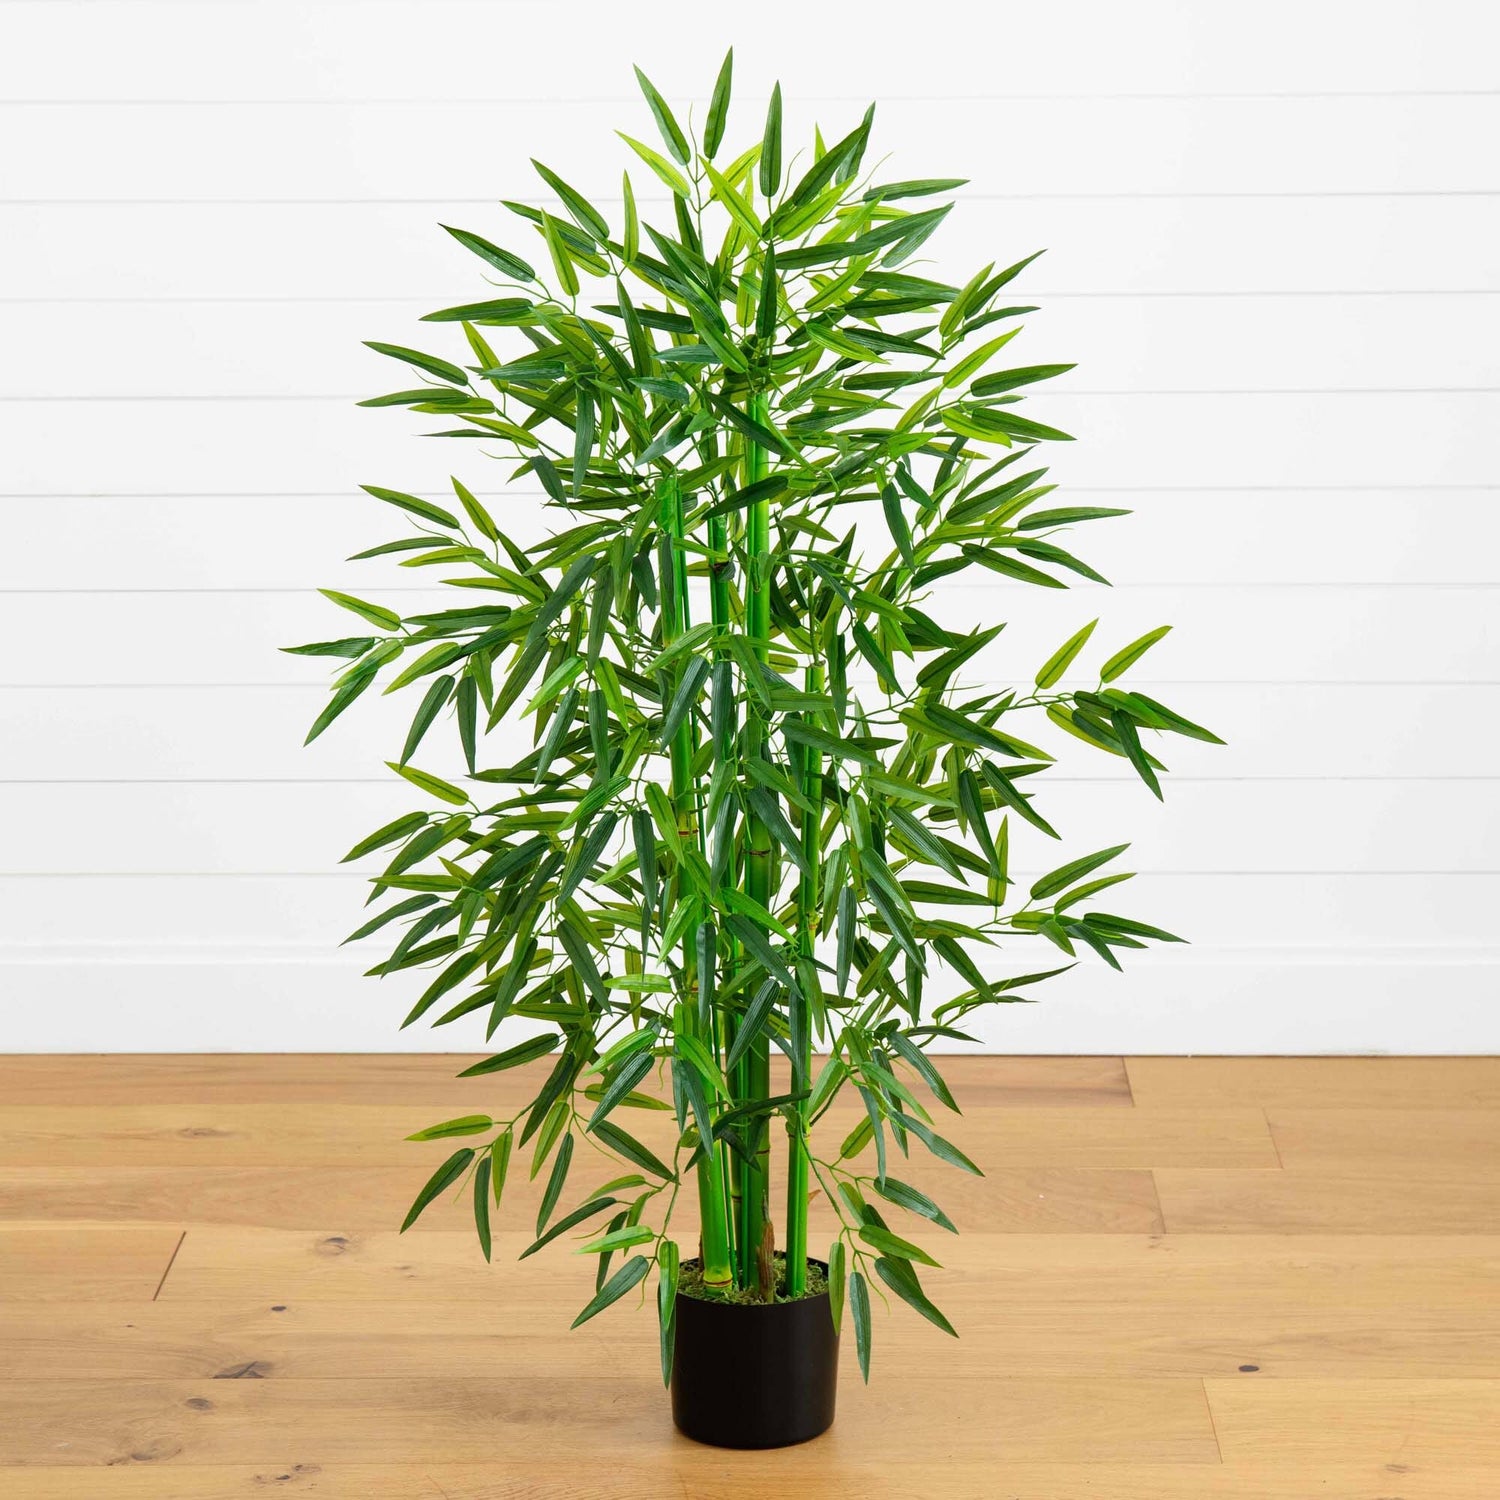 4' Bamboo Tree UV Resistant (Indoor/Outdoor)